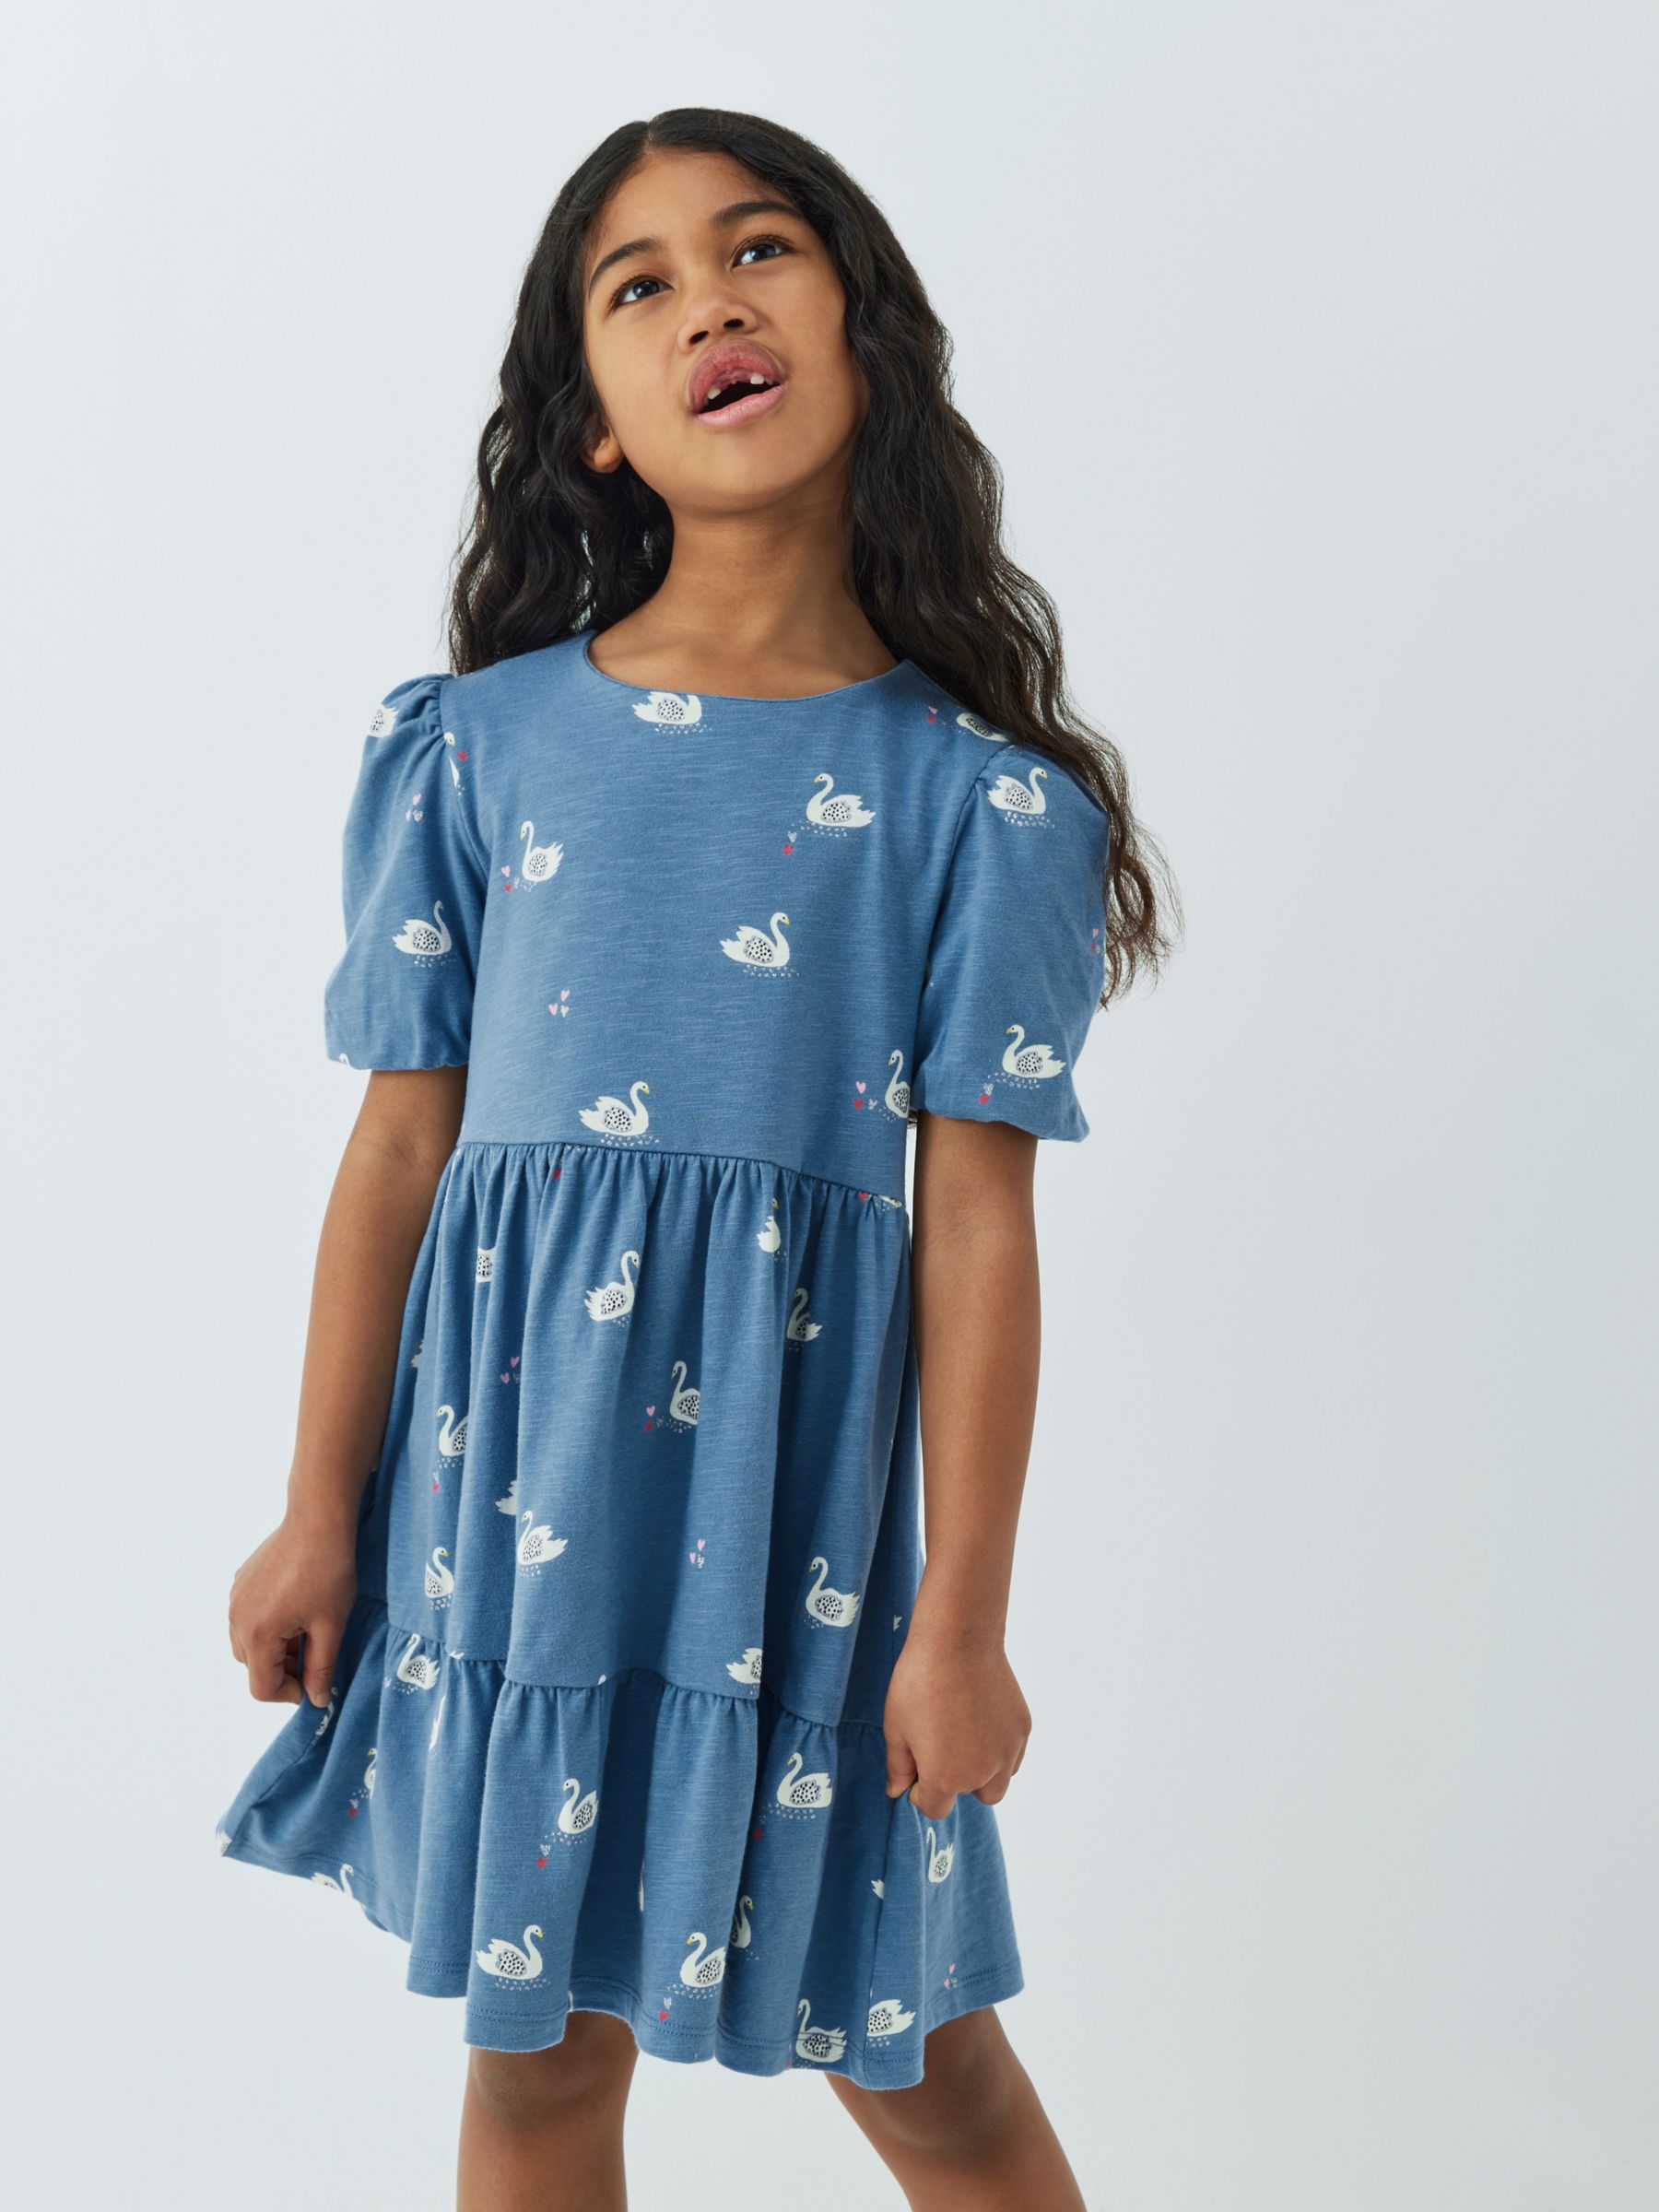 John Lewis Kids' Swan Print Smock Dress, Blue at John Lewis & Partners